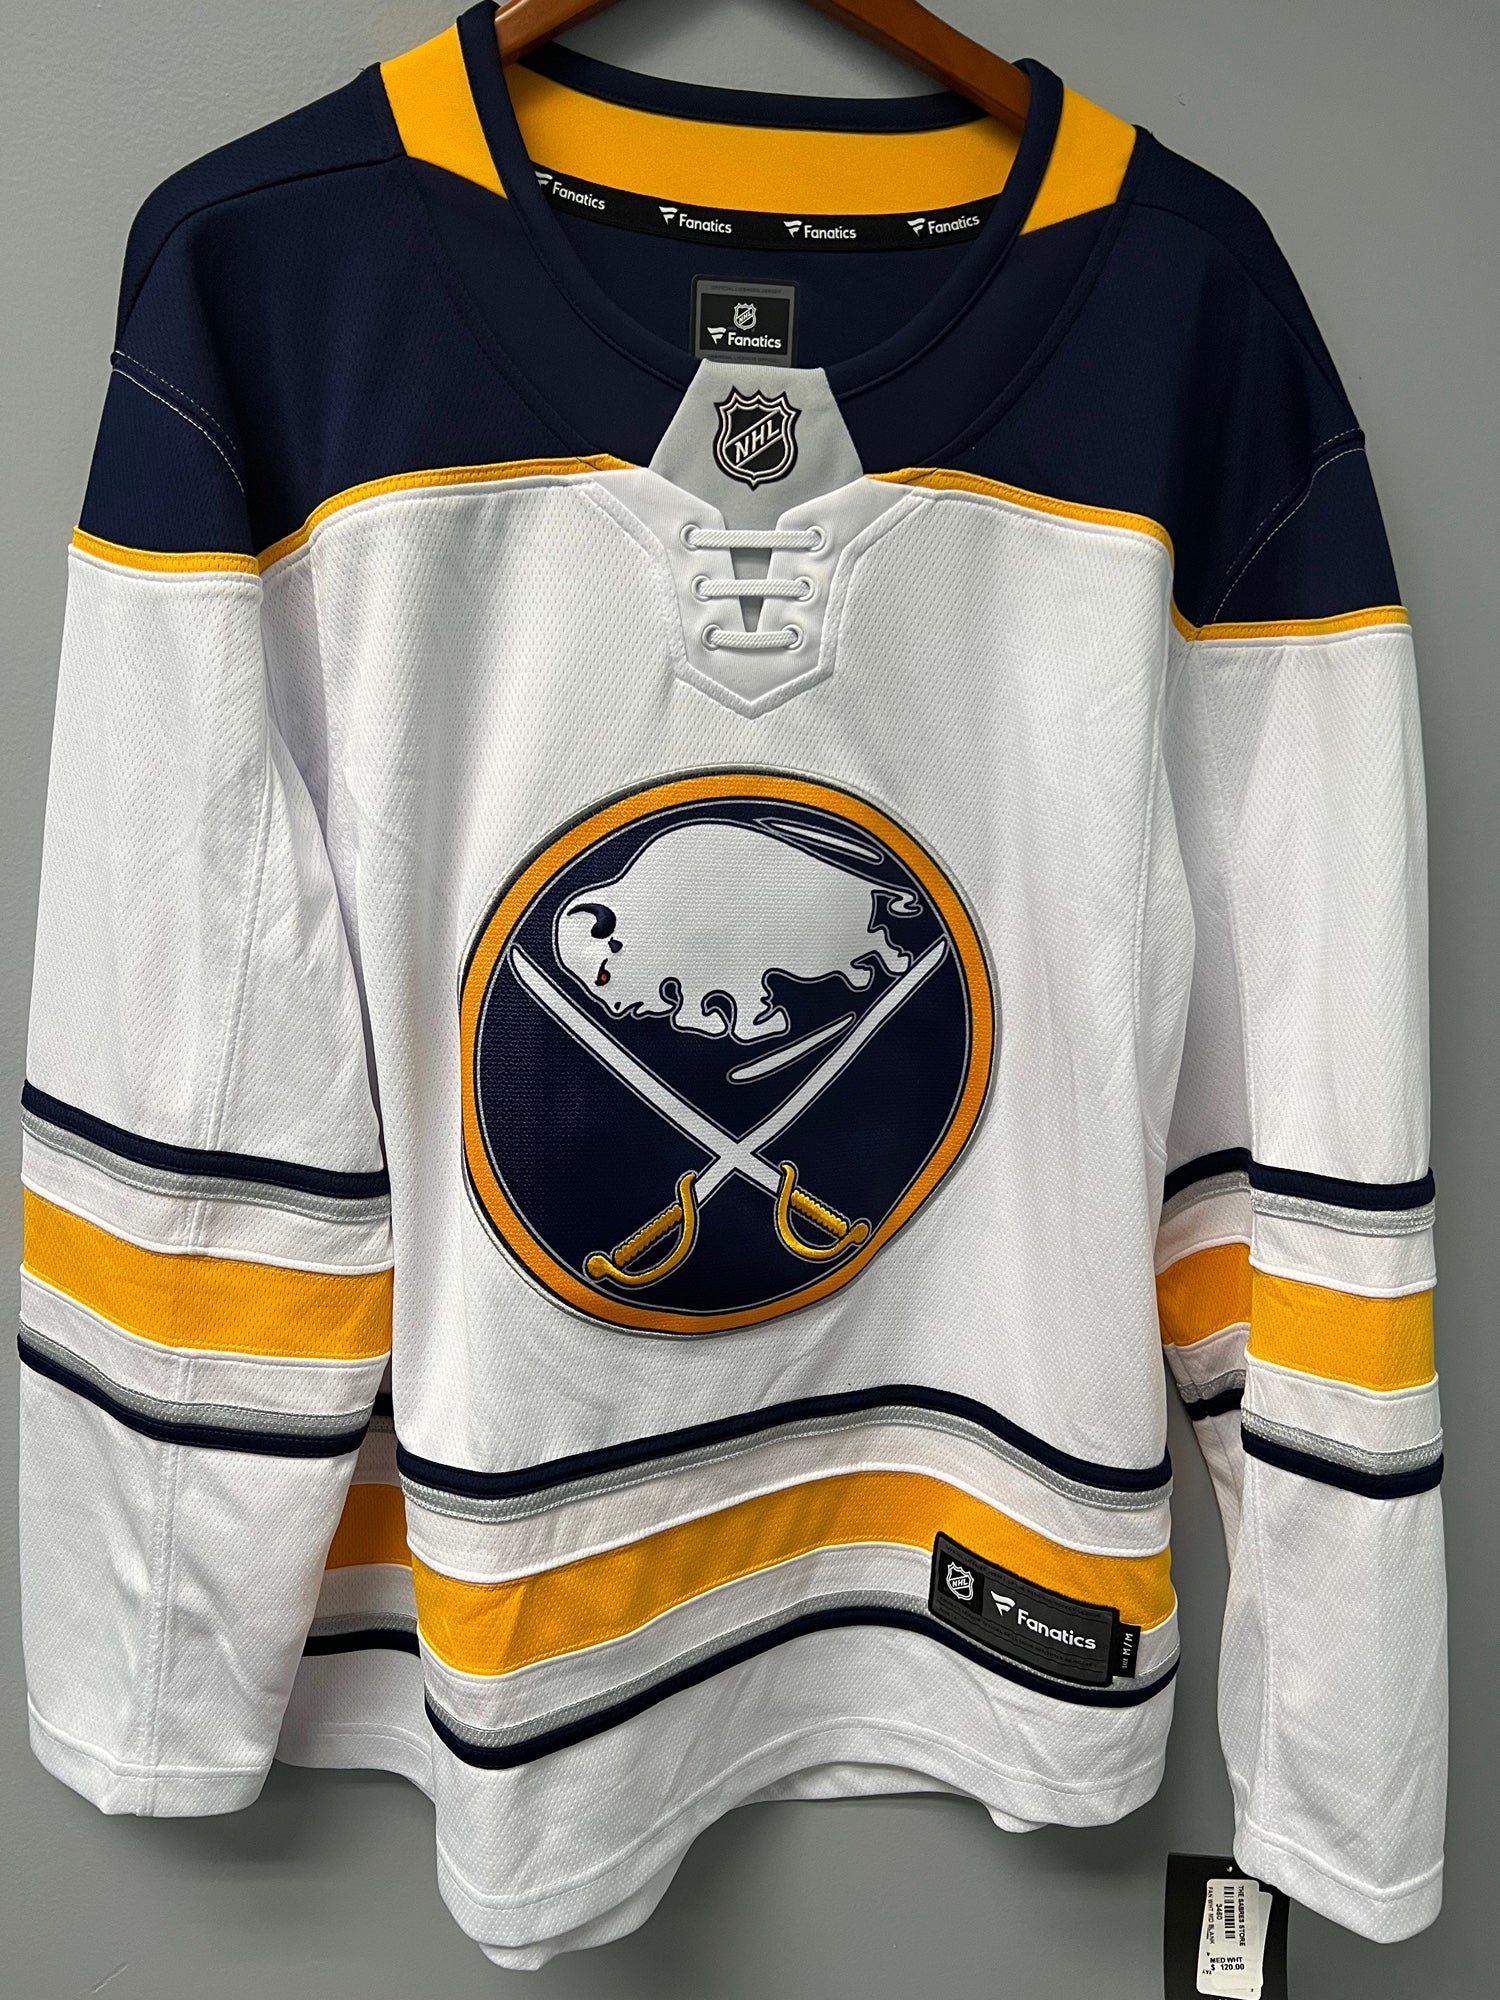 Buffalo Sabres replica jersey